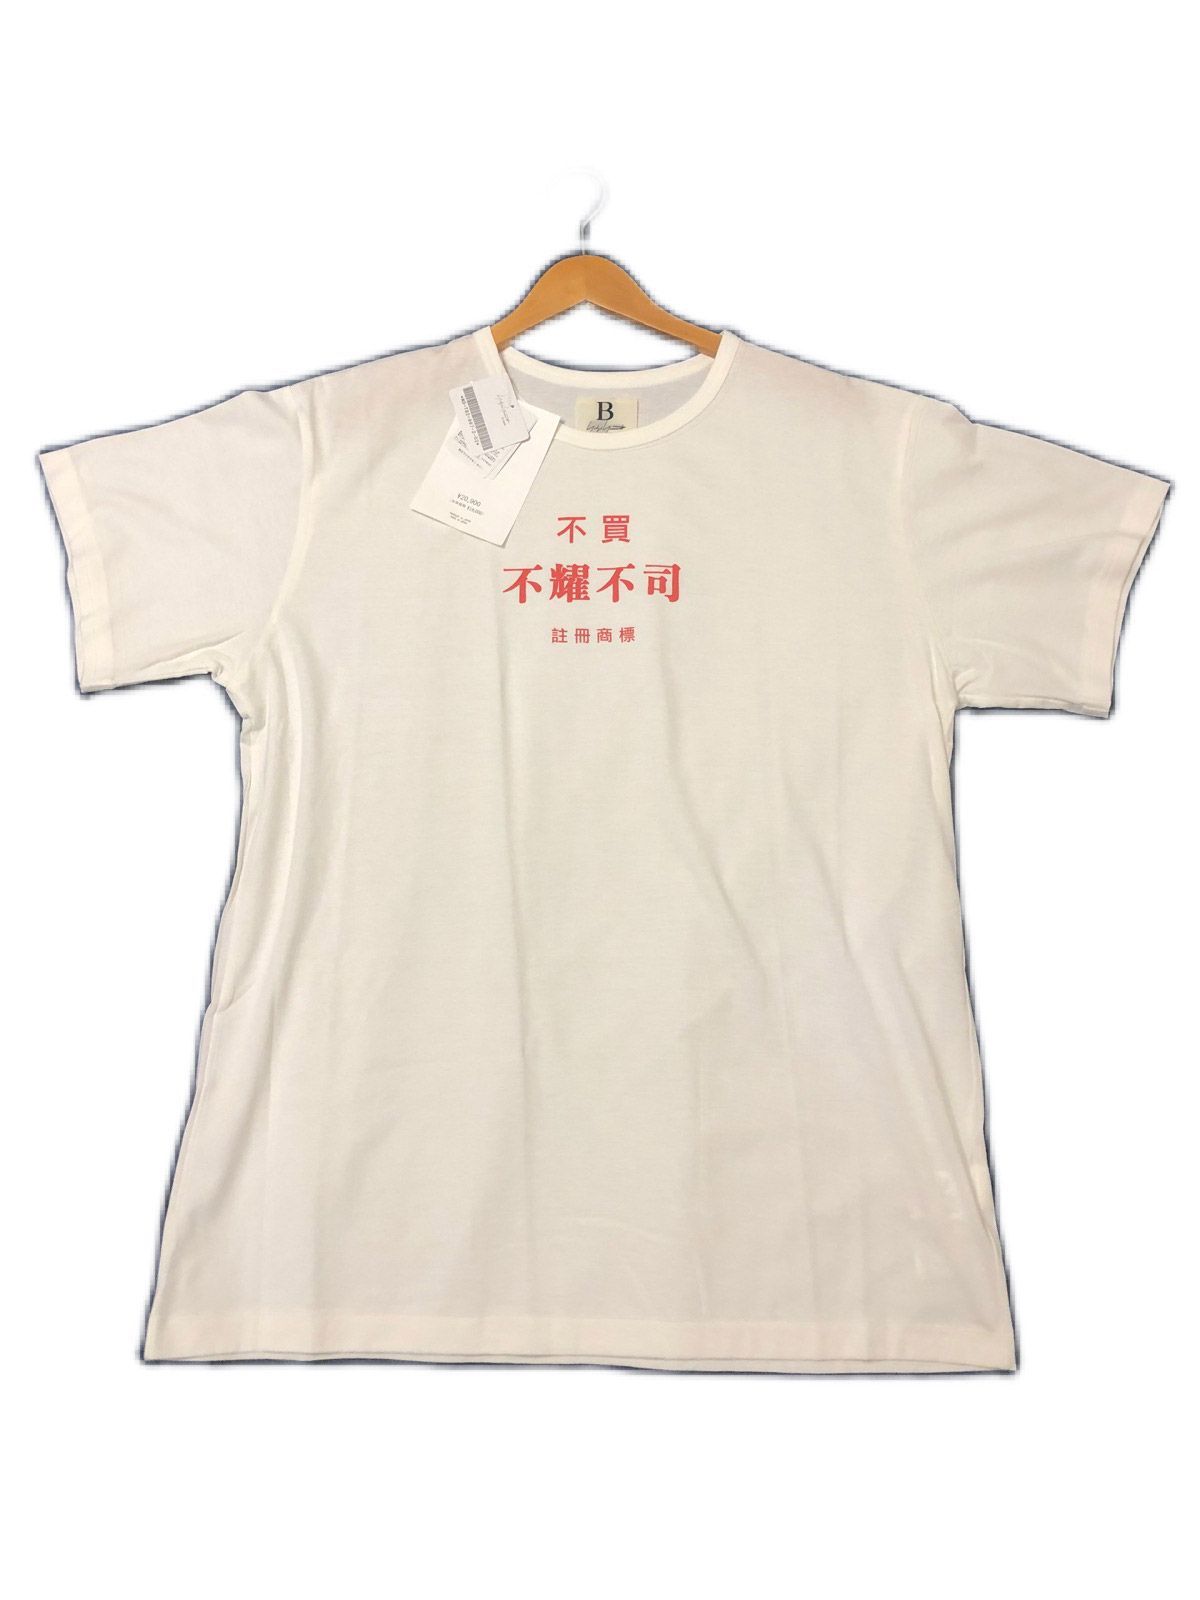 yohji yamamoto 19ss 面会謝絶Tシャツ